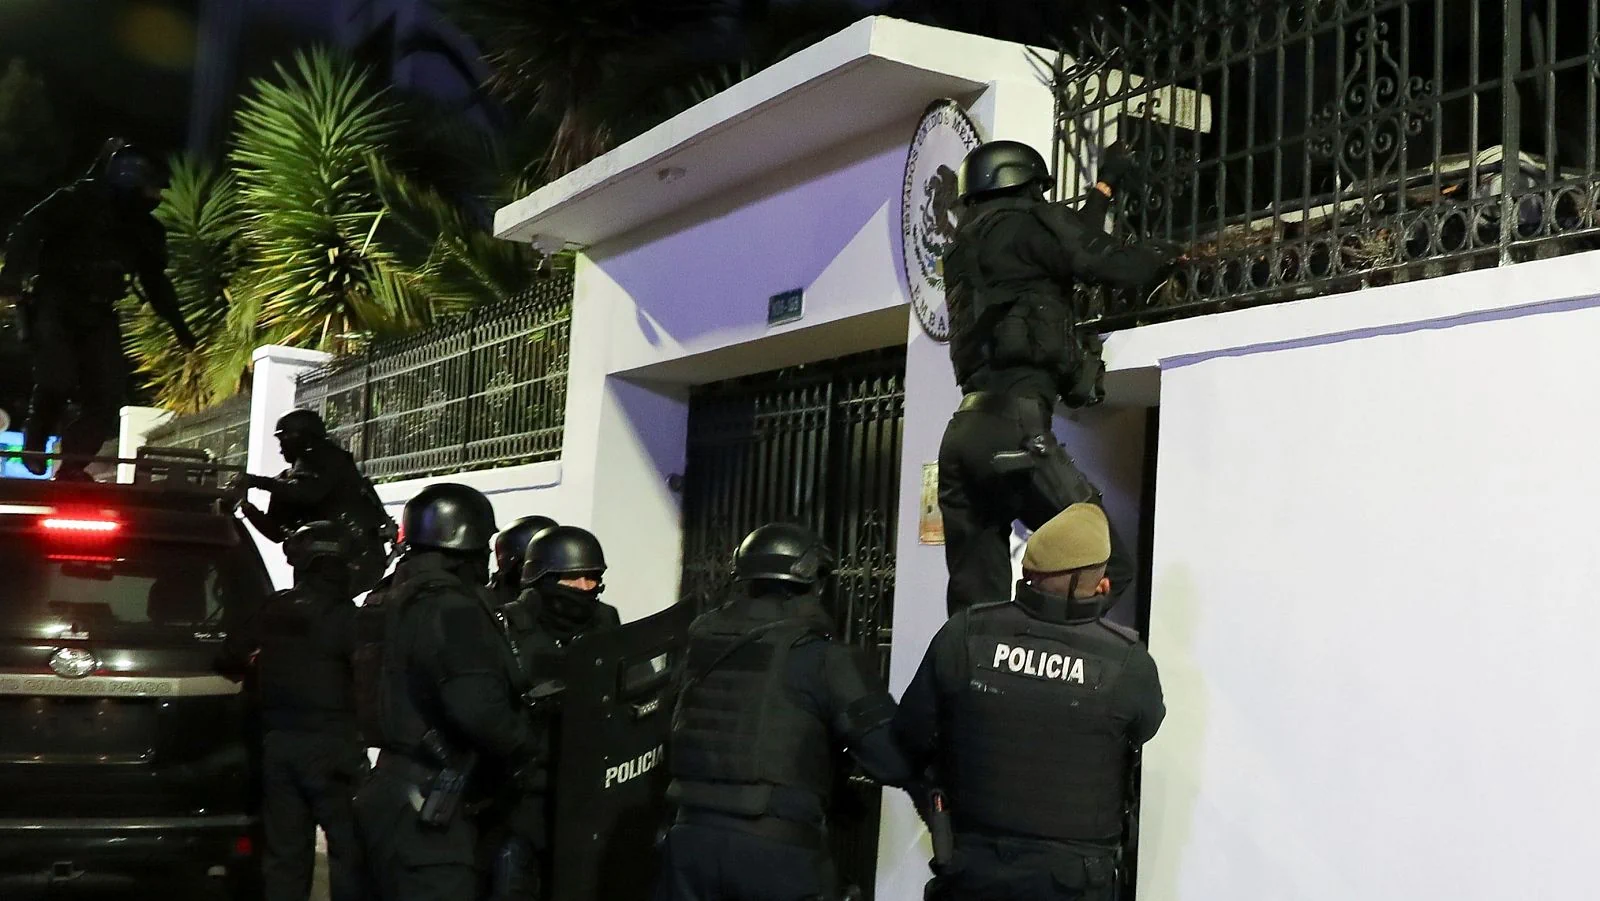 Посольство Мексики в Эквадоре будет закрыто на неопределенный срок